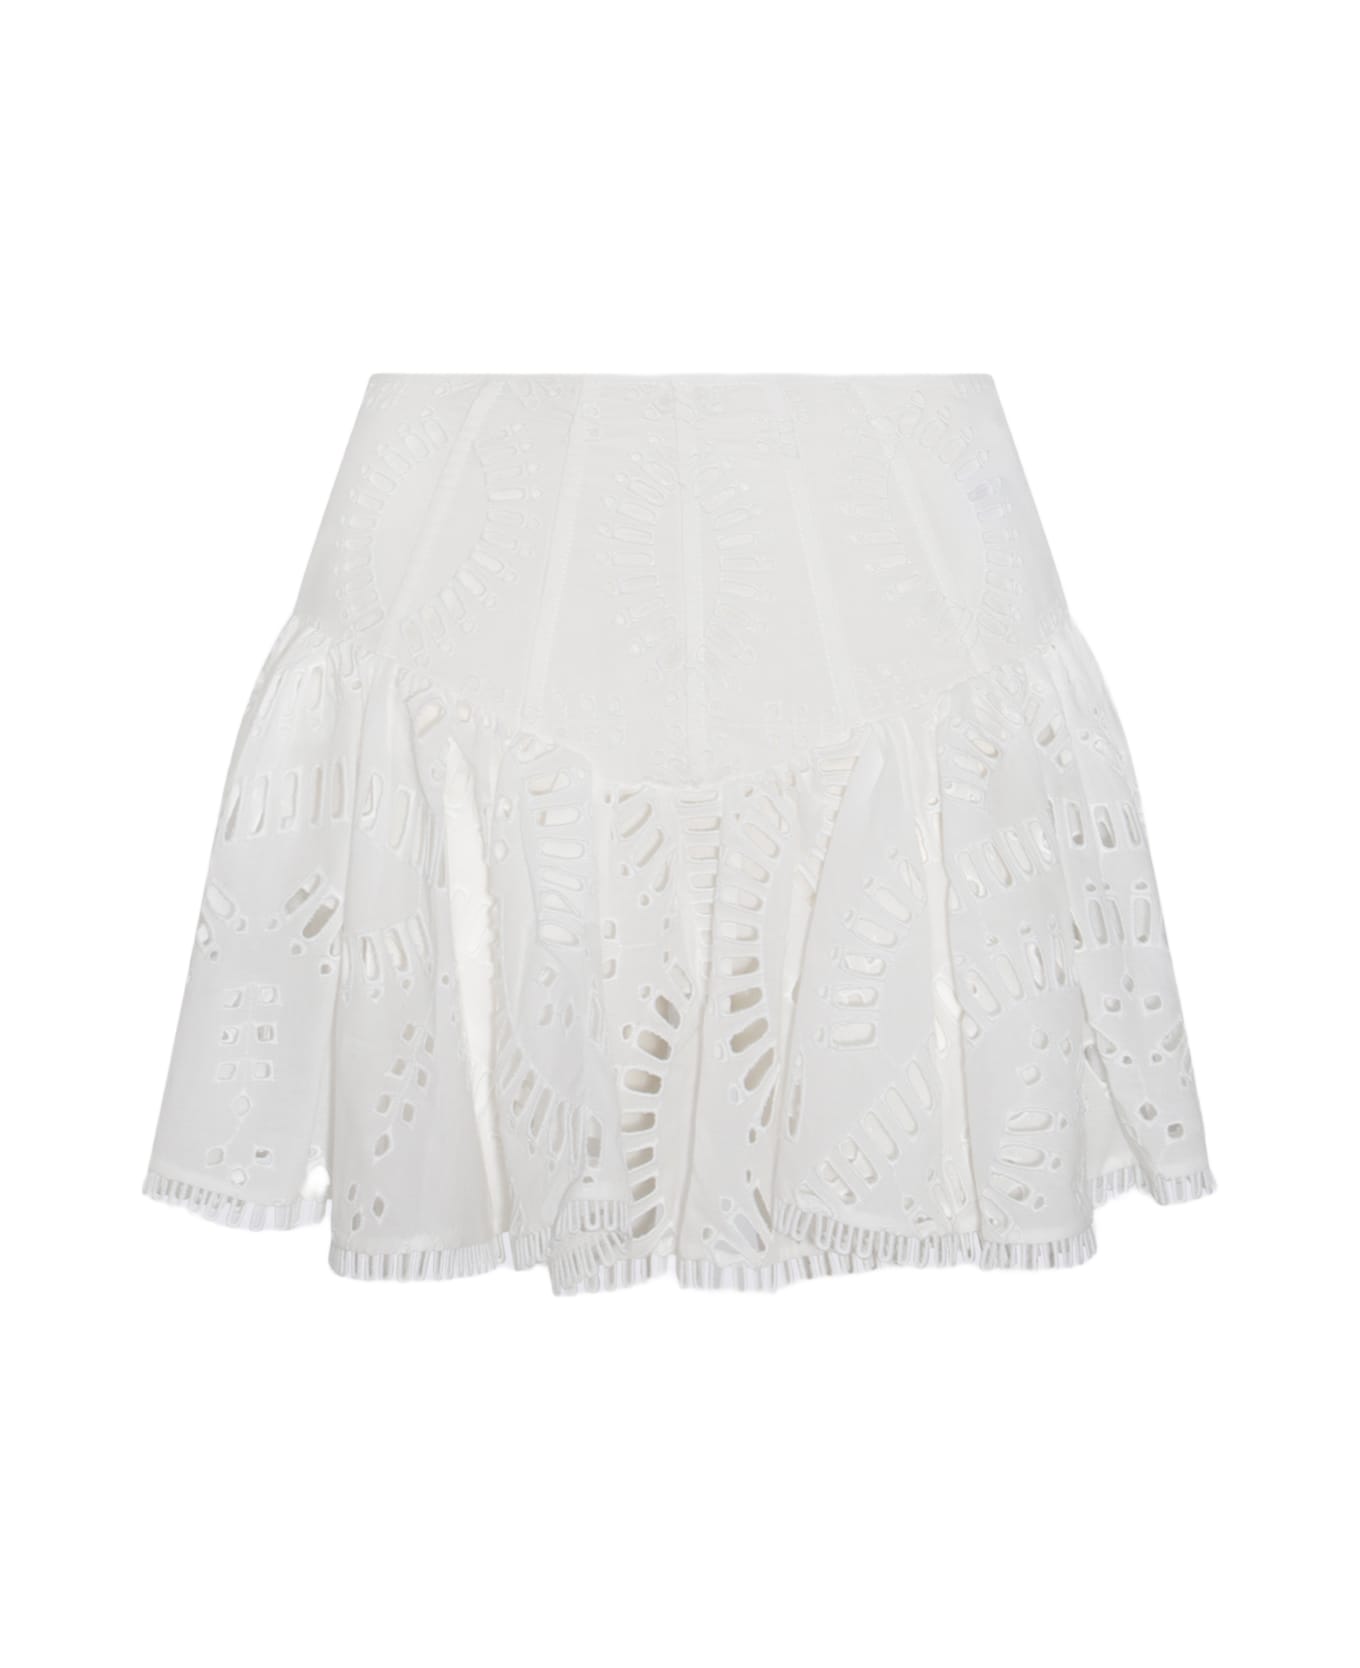 Charo Ruiz White Cotton Skirt スカート